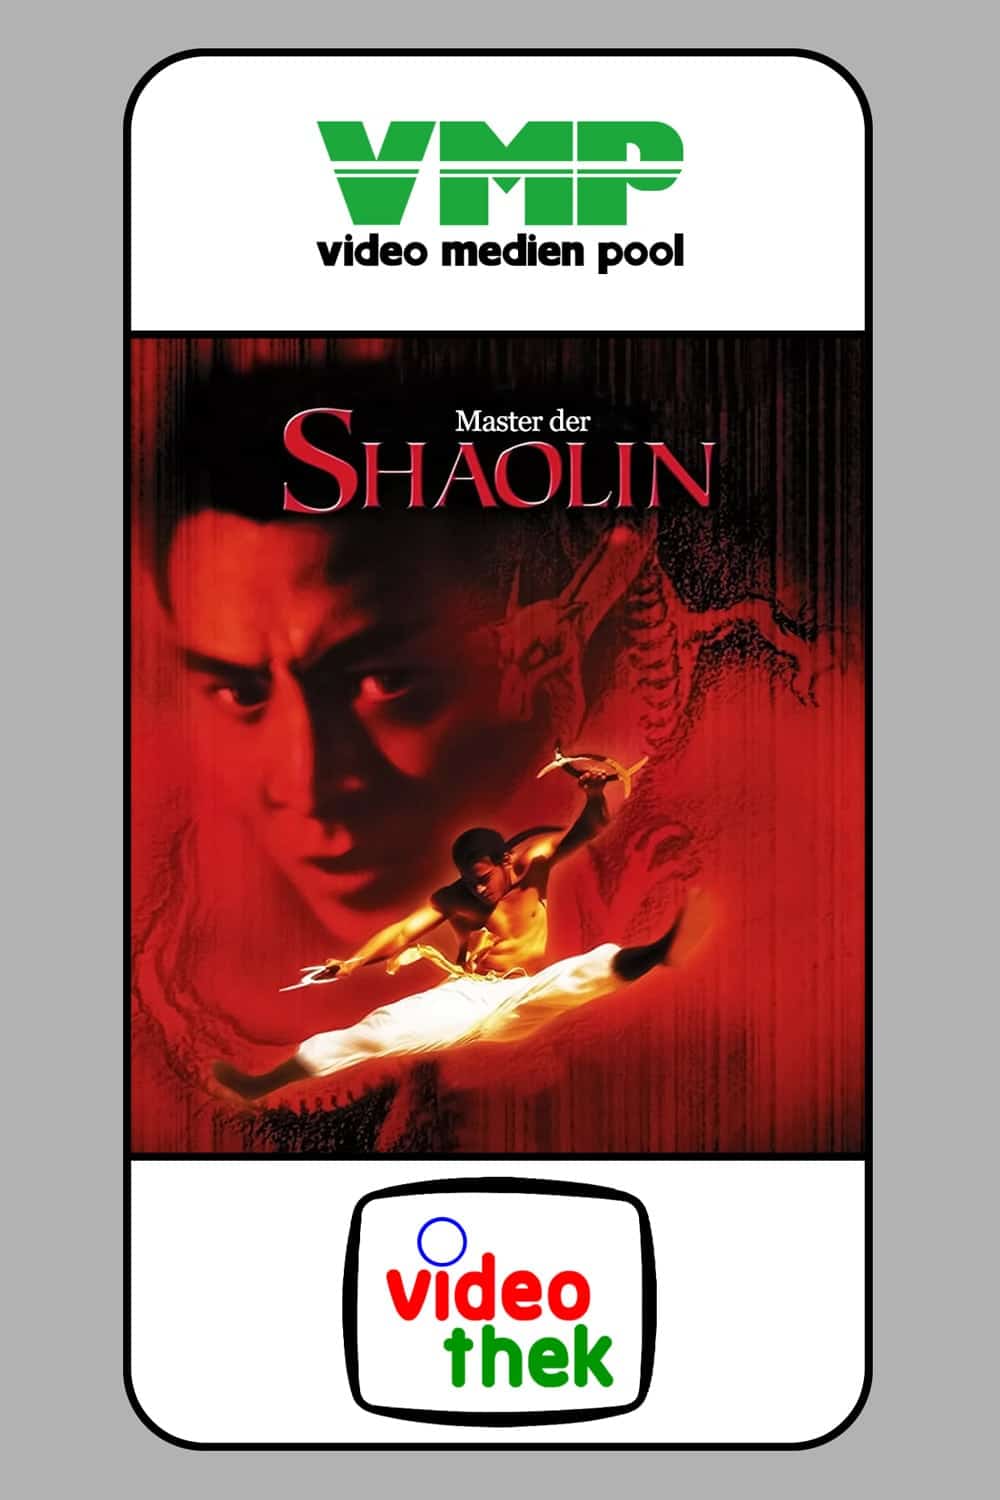 Plakat von "Master der Shaolin"